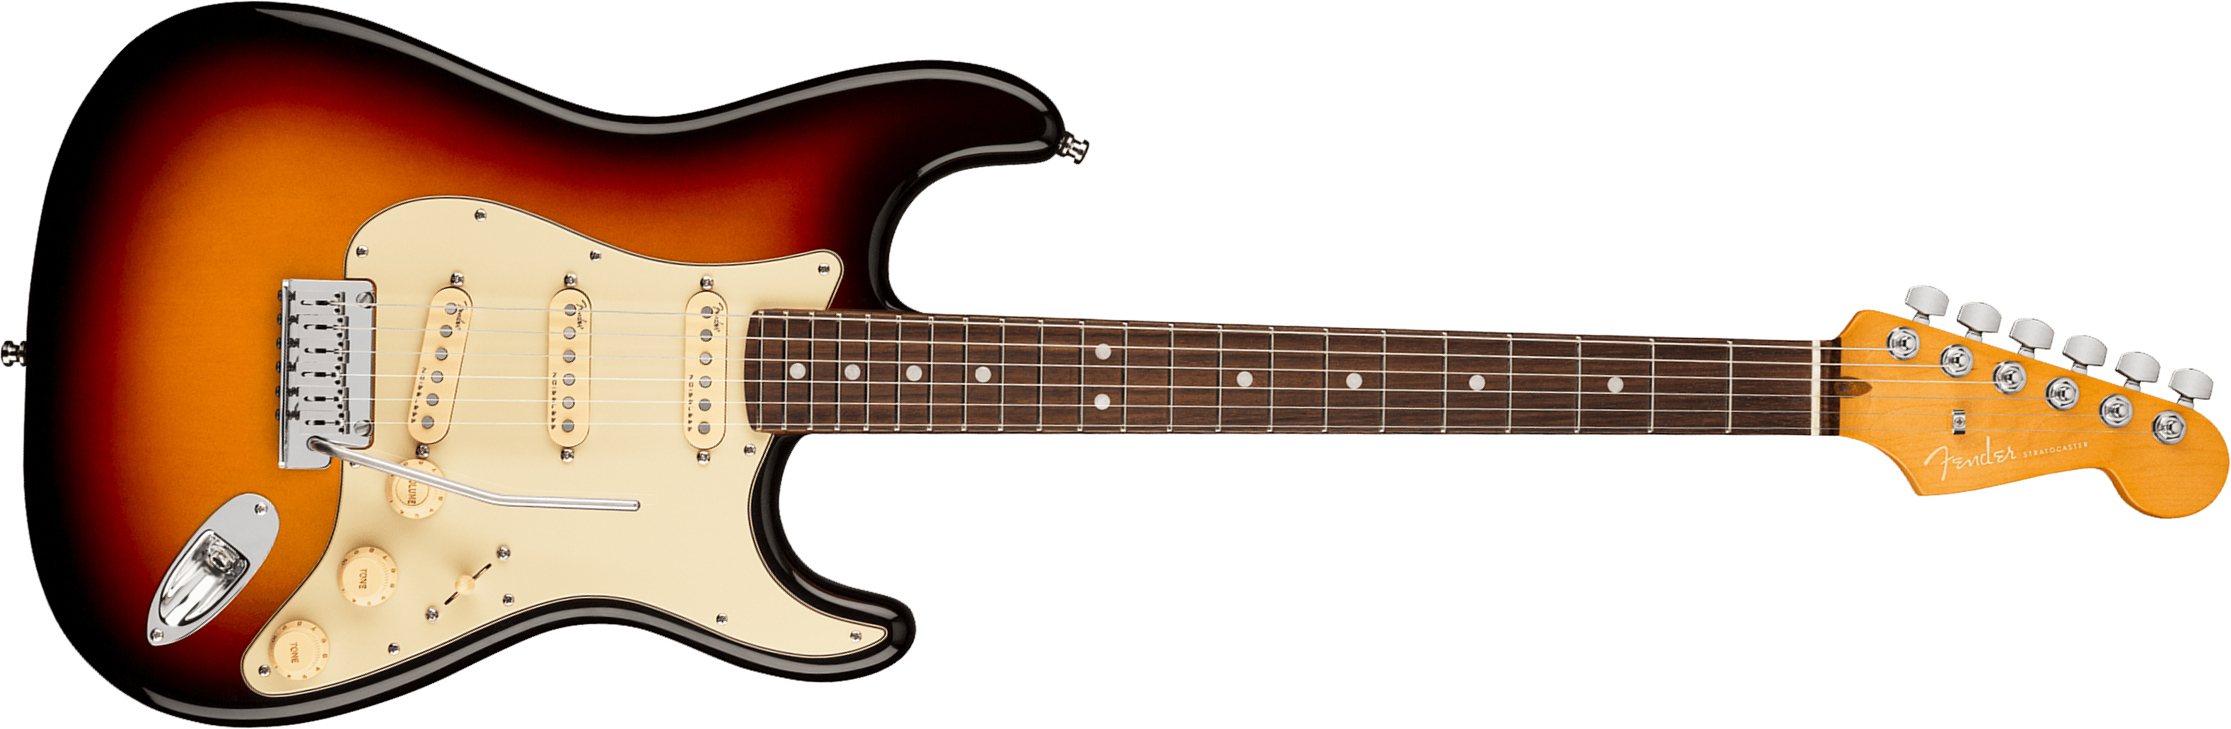 Fender Strat American Ultra 2019 Usa Rw - Ultraburst - Elektrische gitaar in Str-vorm - Main picture